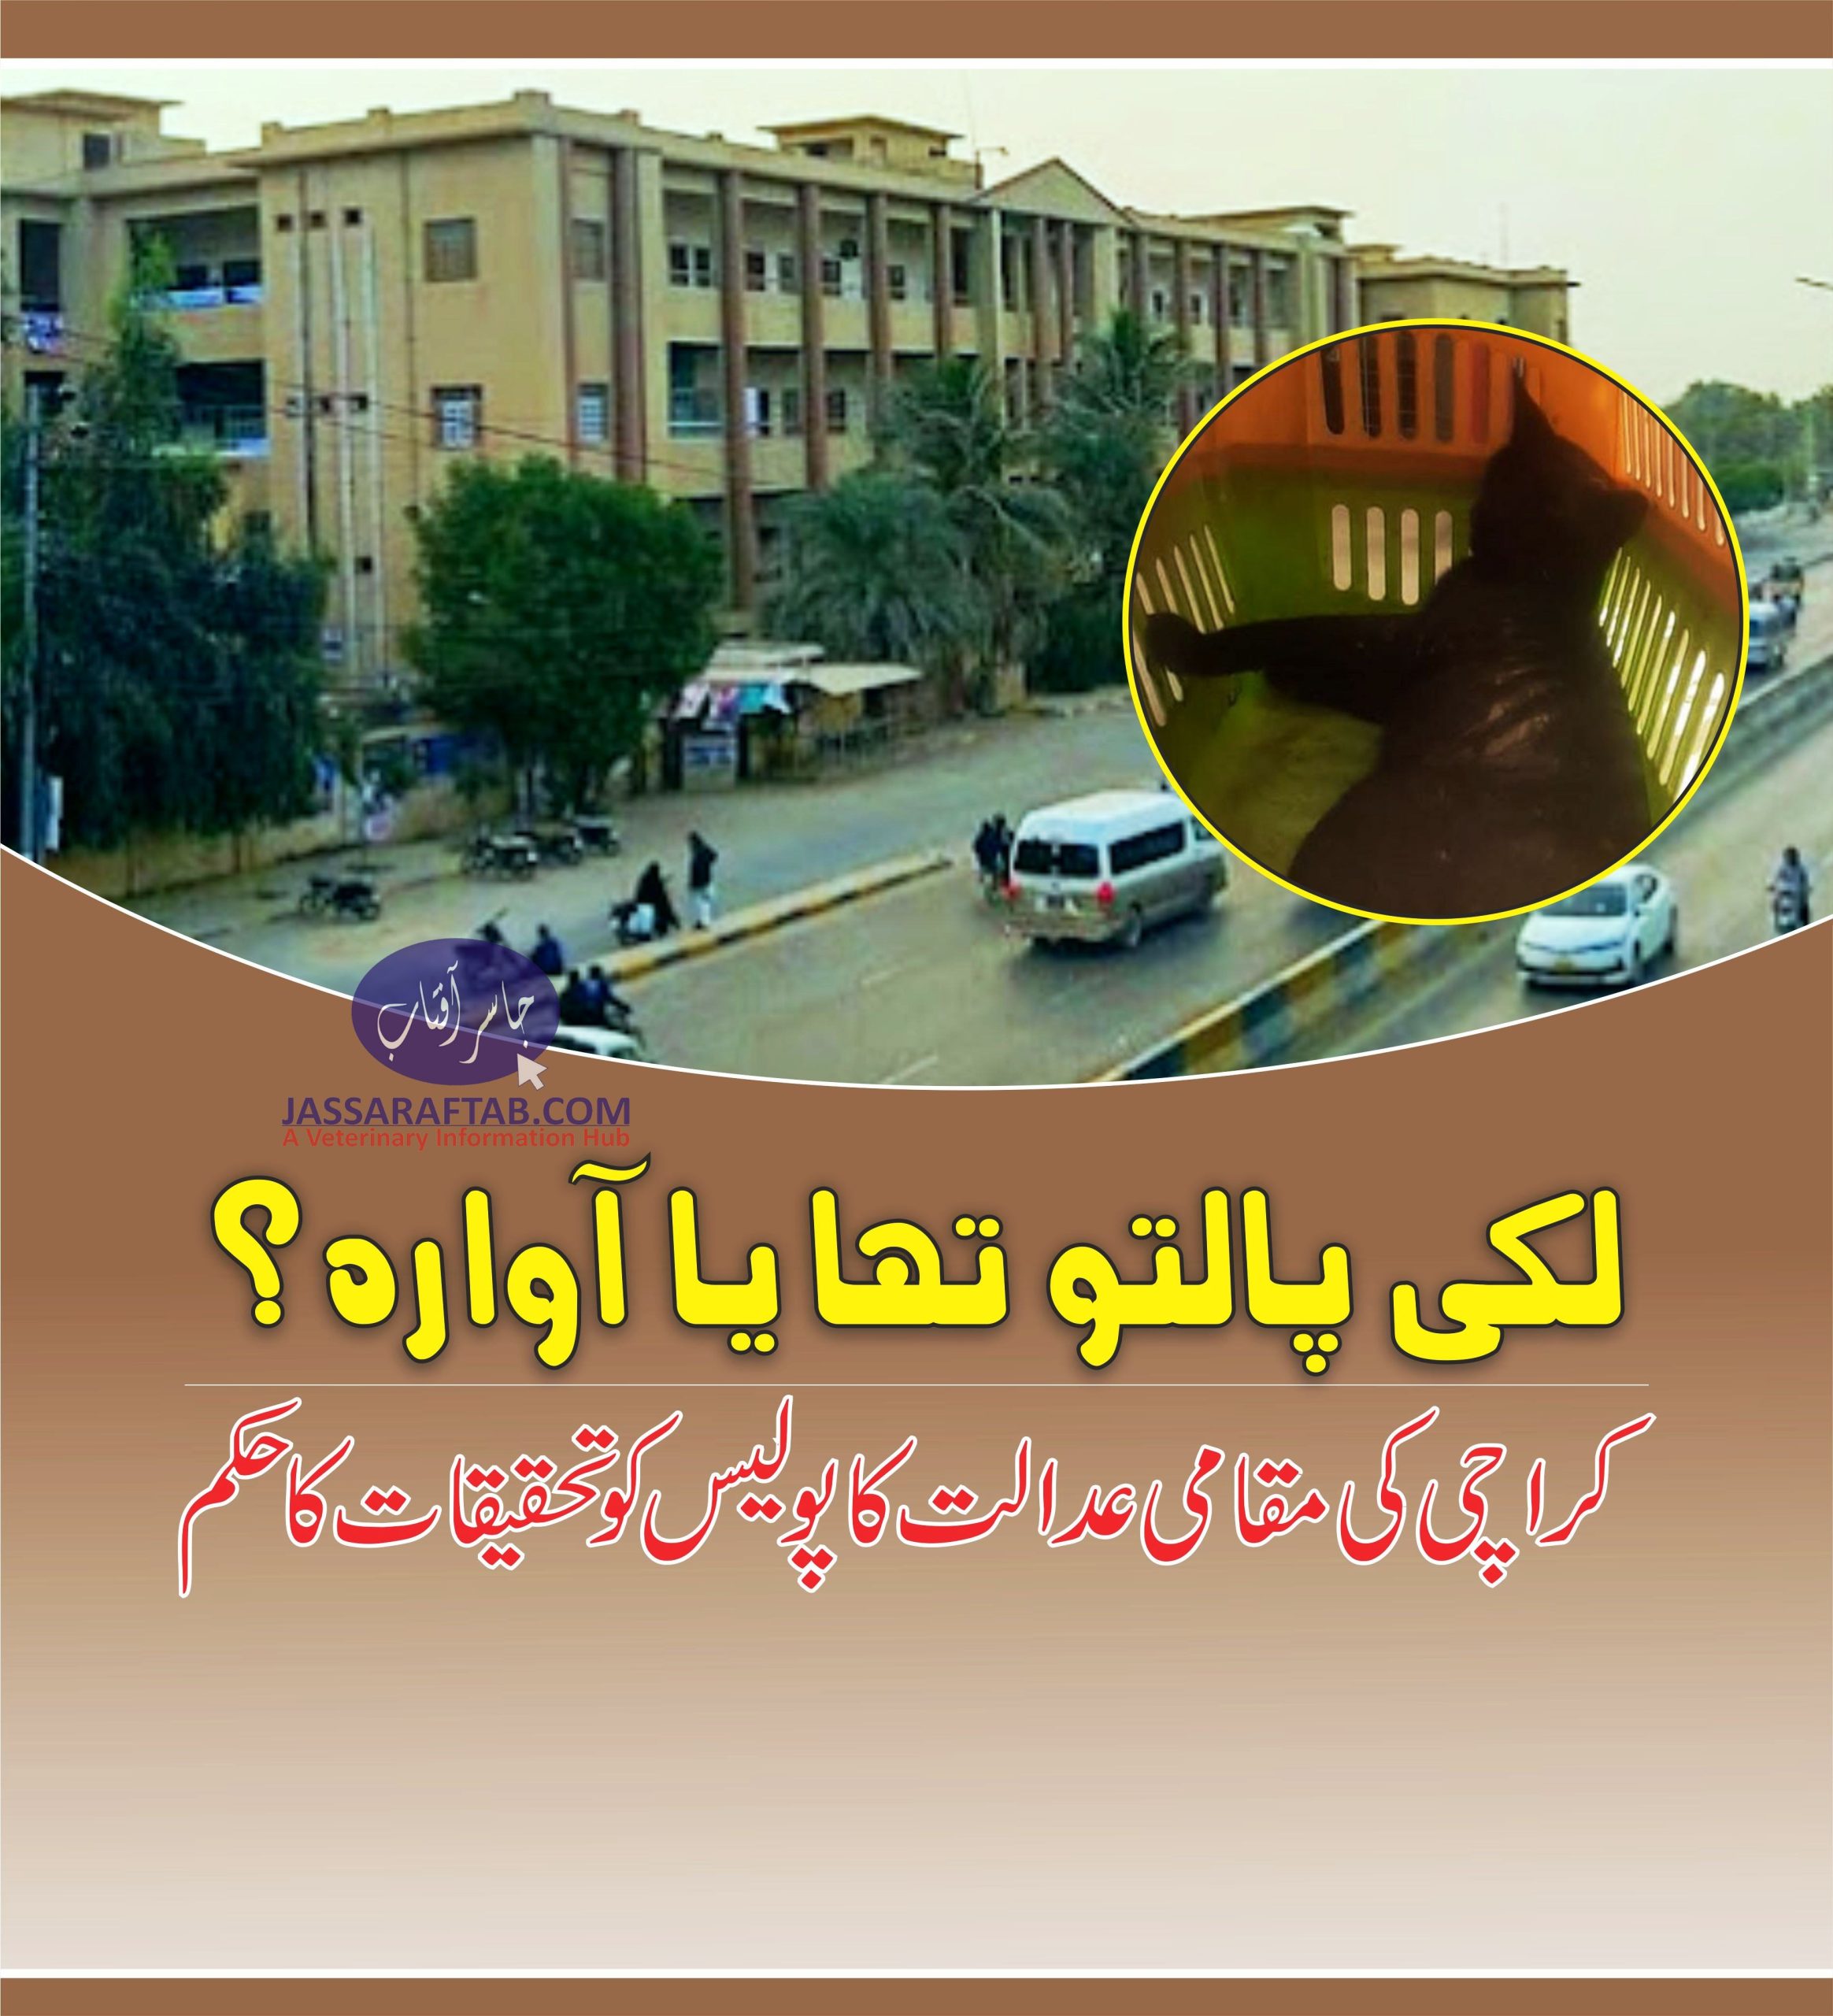 لکی پالتو تھا یا آوارہ؟ کراچی کی مقامی عدالت کا پولیس کو تحقیقات کا حکم